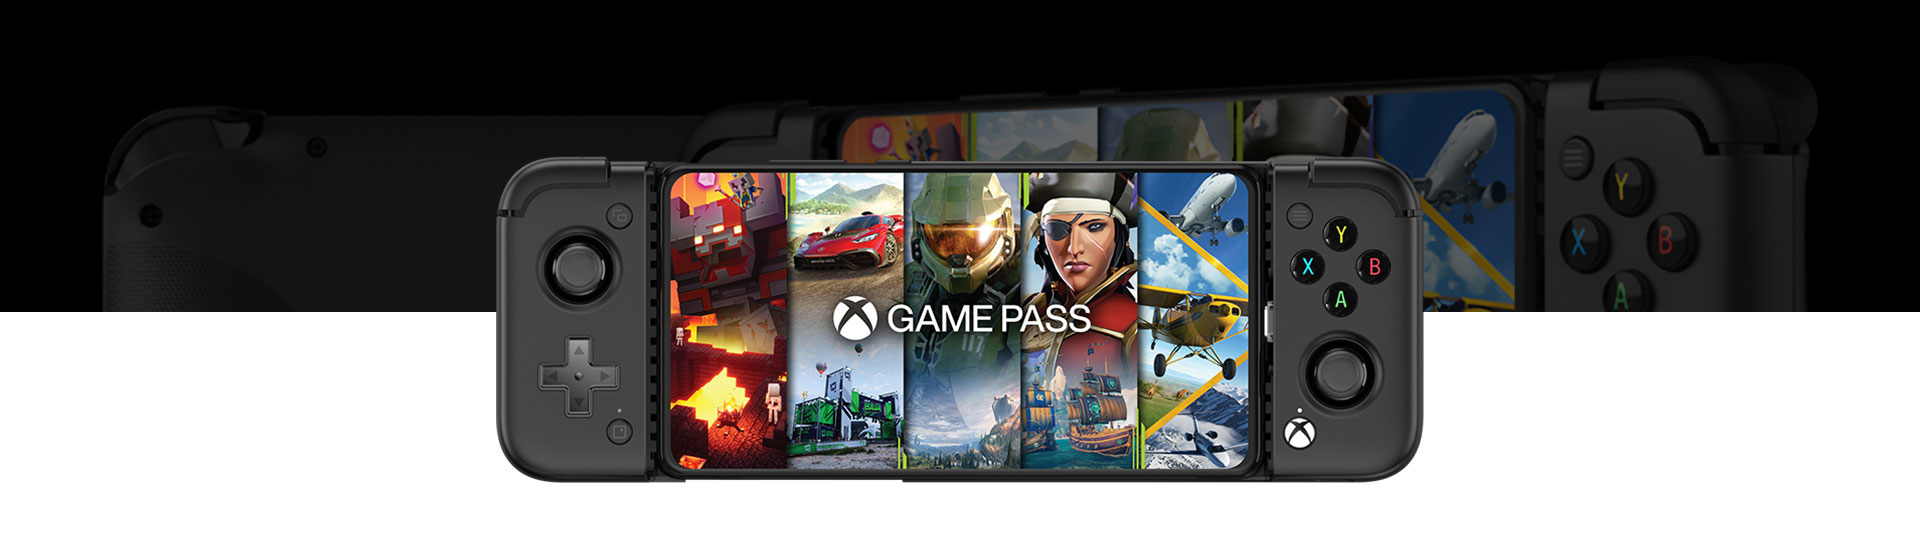 Μπροστινή προβολή του χειριστηρίου Gaming για κινητό Android, GameSir X2 Pro με γέμισμα οθόνης Game Pass